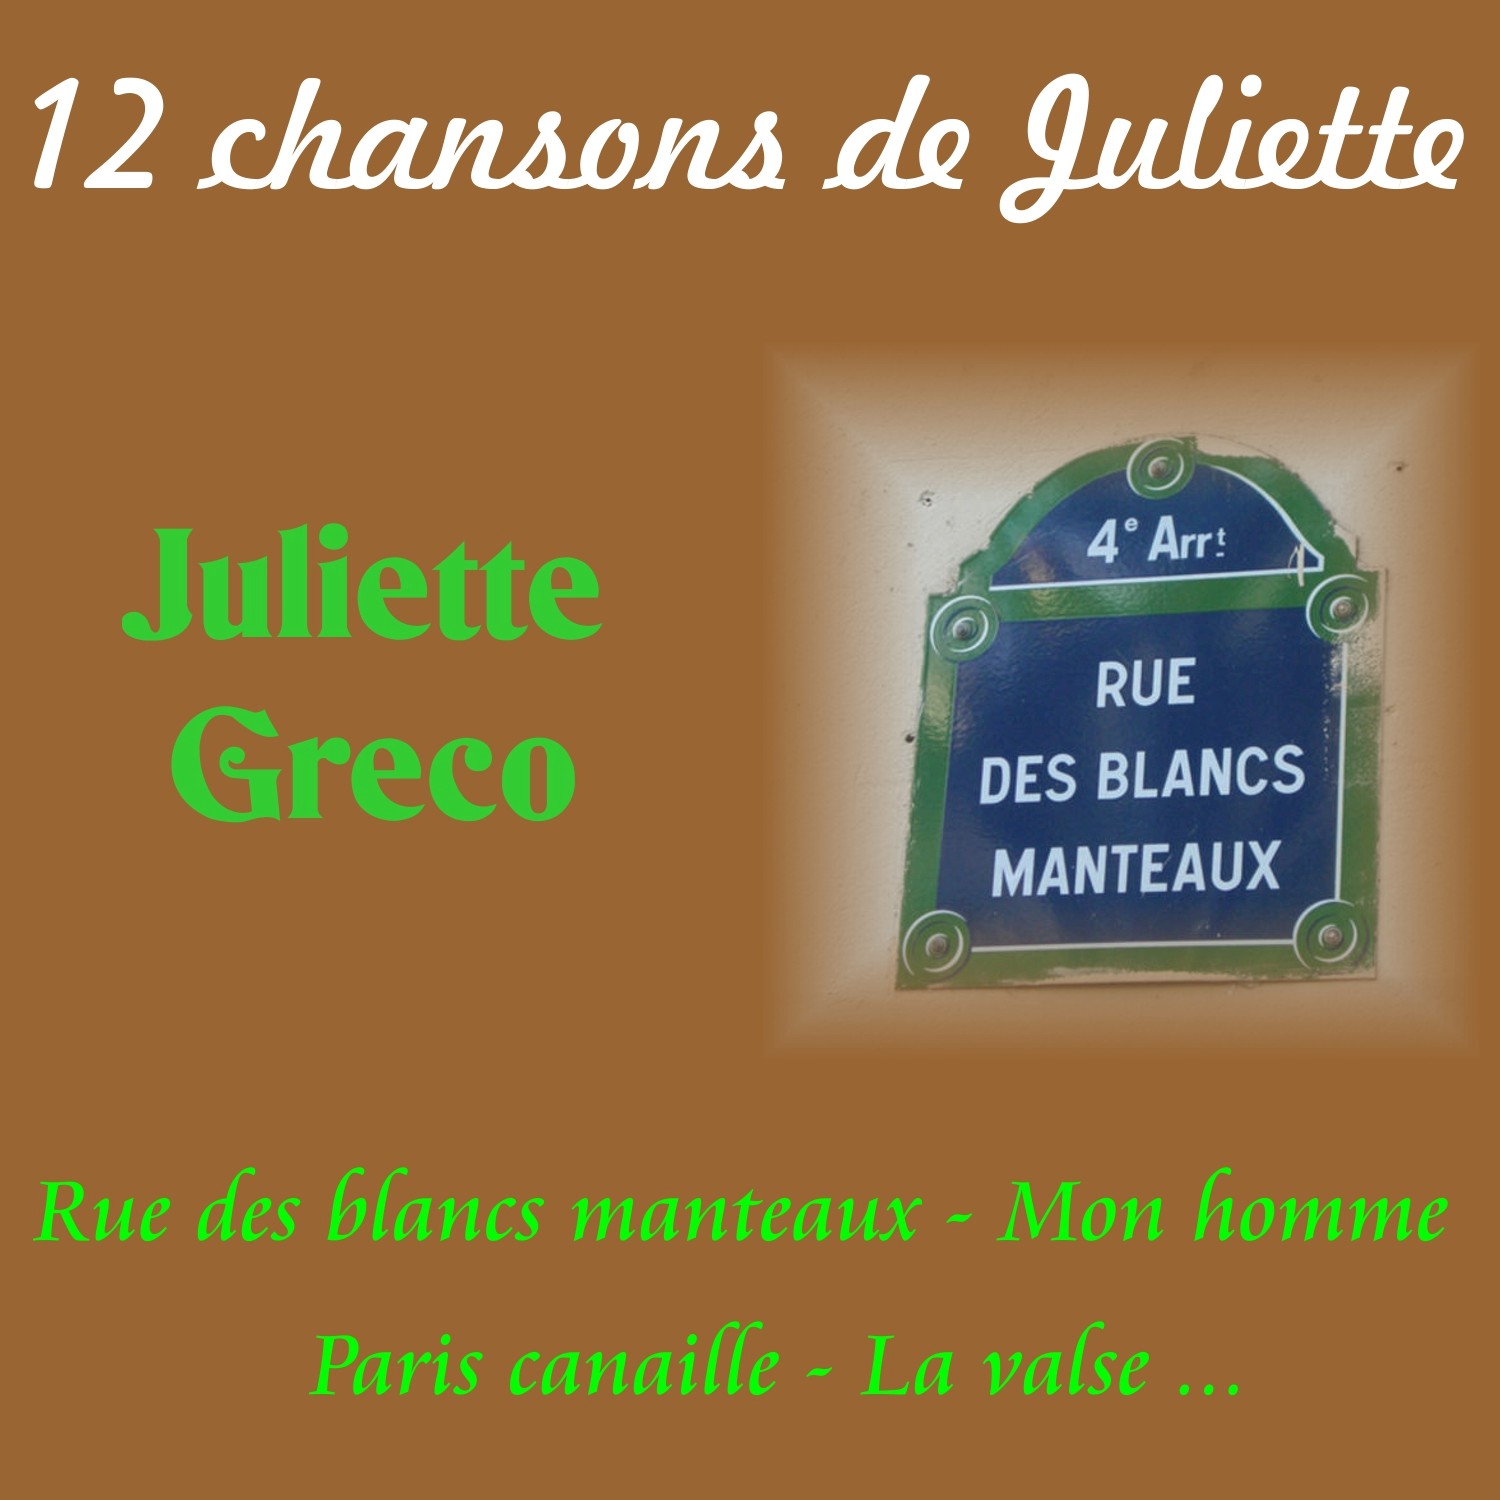 12 Chansons de Juliette